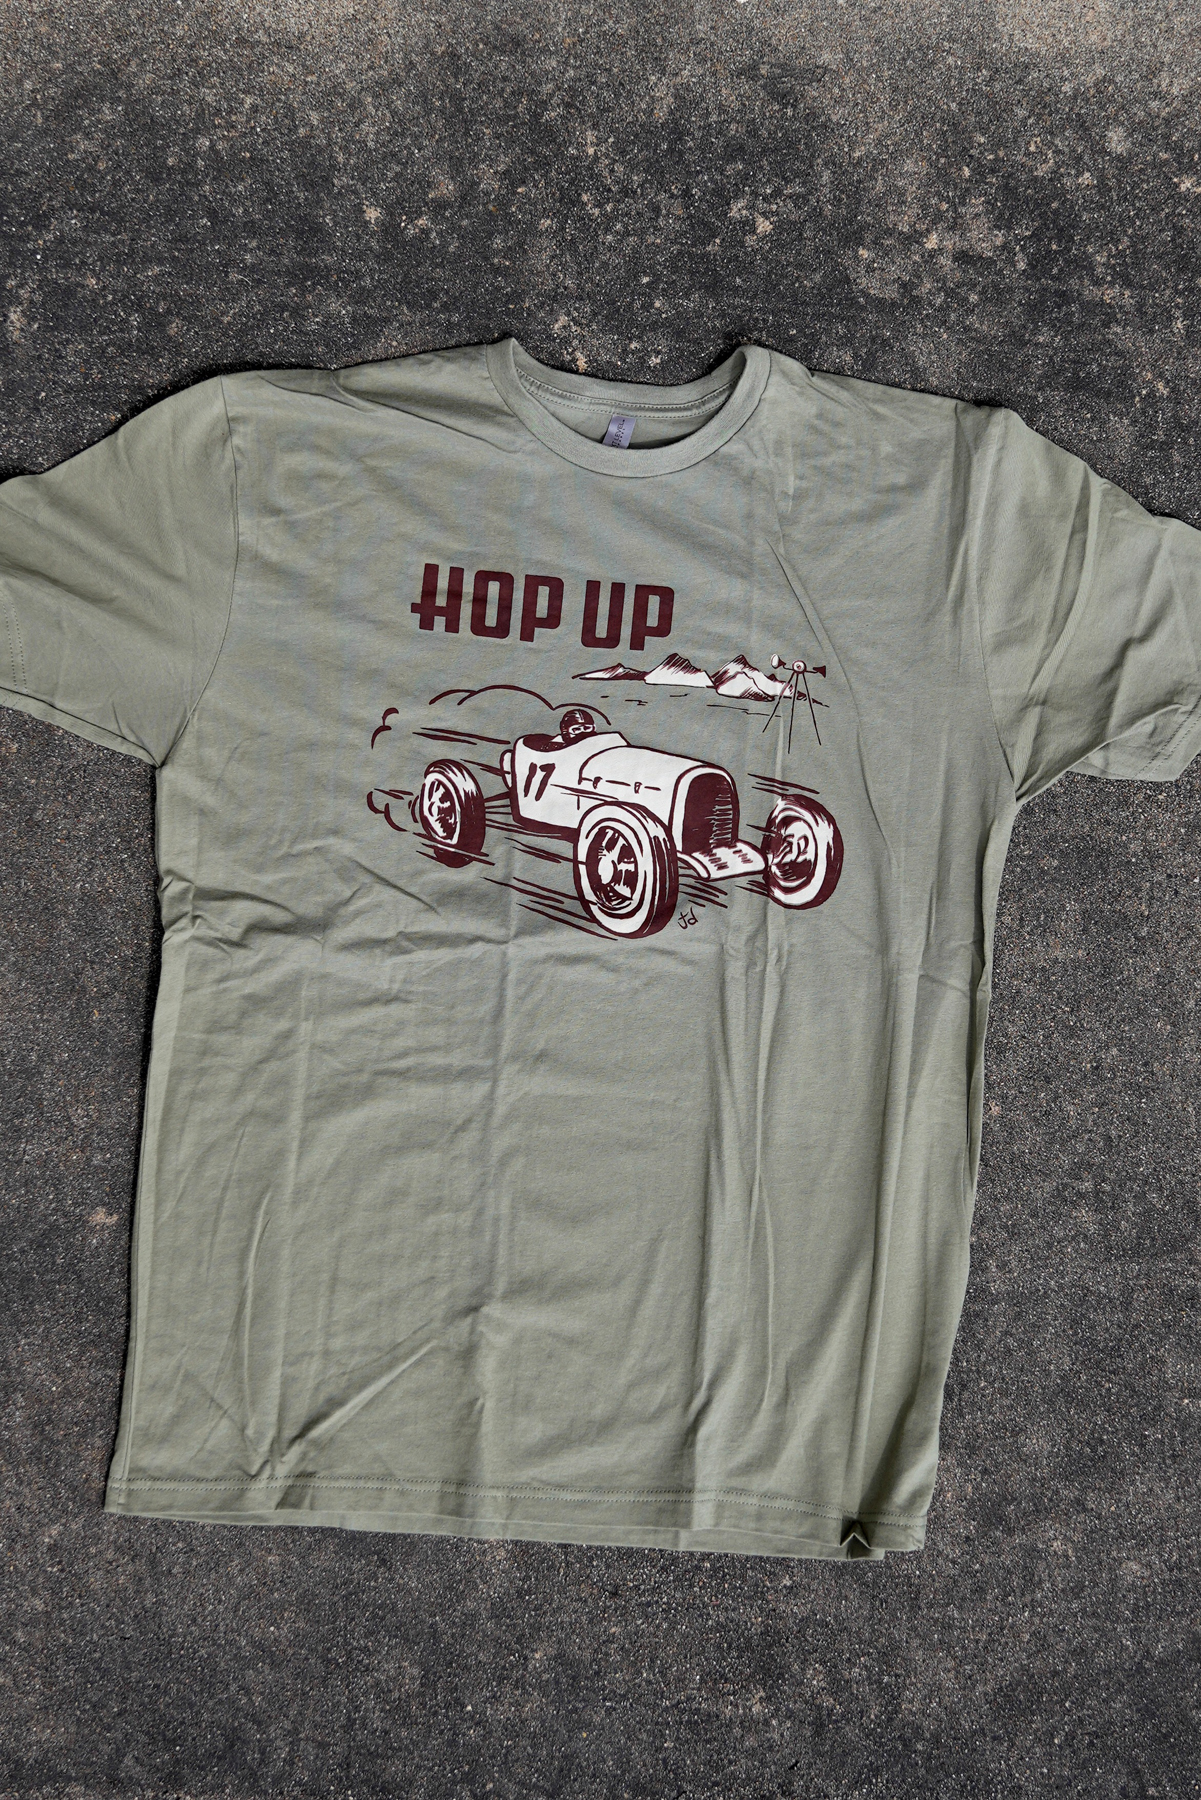 Hop Up Magazine Bonneville 1951 Hot Rod Car Tribute T Shirt 